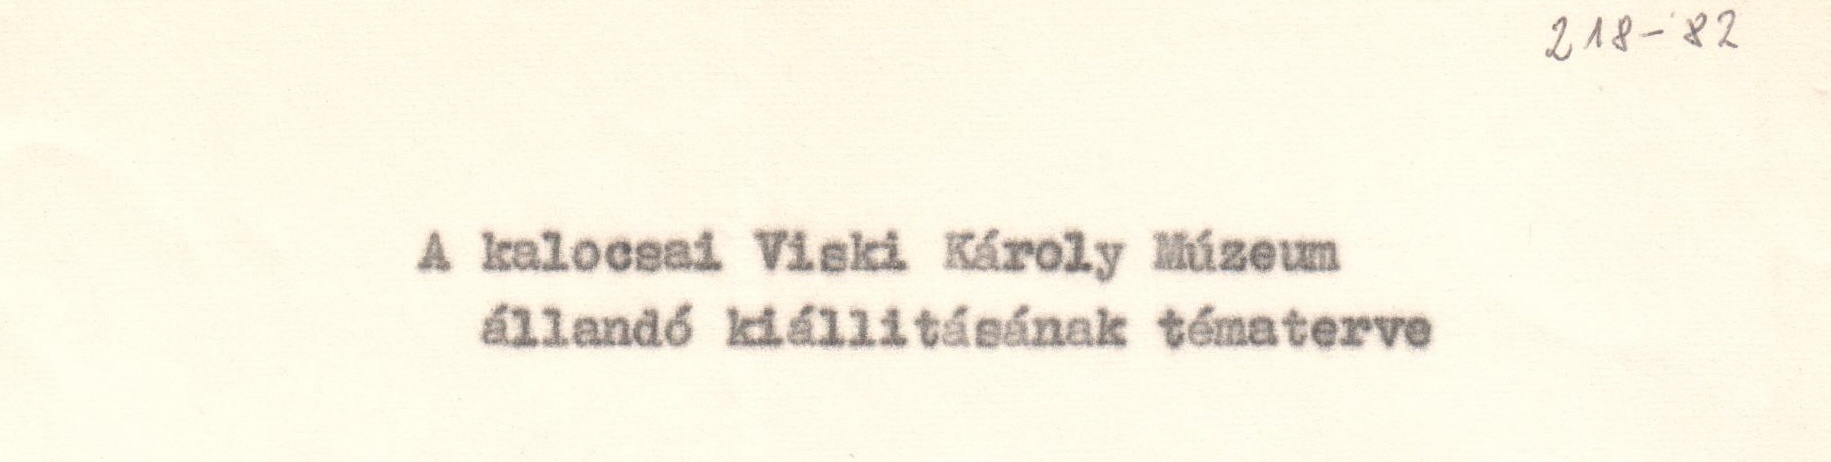 A kalocsai Viski Károly Múzeum állandó kiállításának tématerve. Gépirat. (Viski Károly Múzeum Kalocsa RR-F)